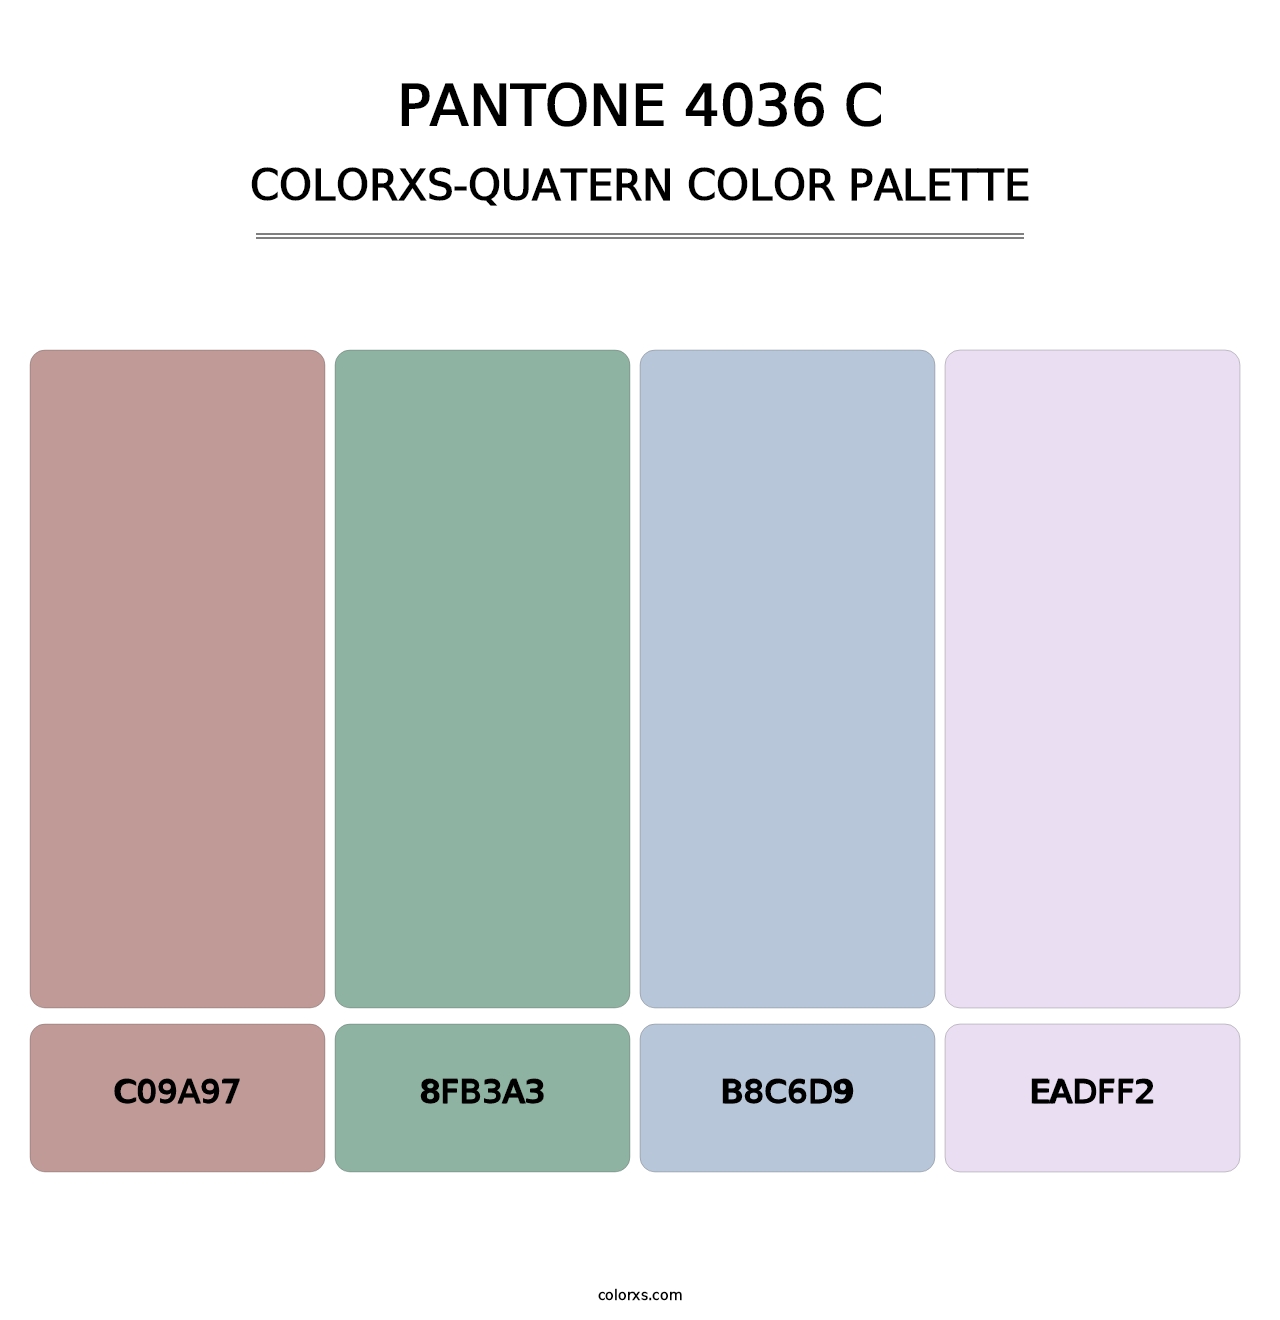 PANTONE 4036 C - Colorxs Quatern Palette